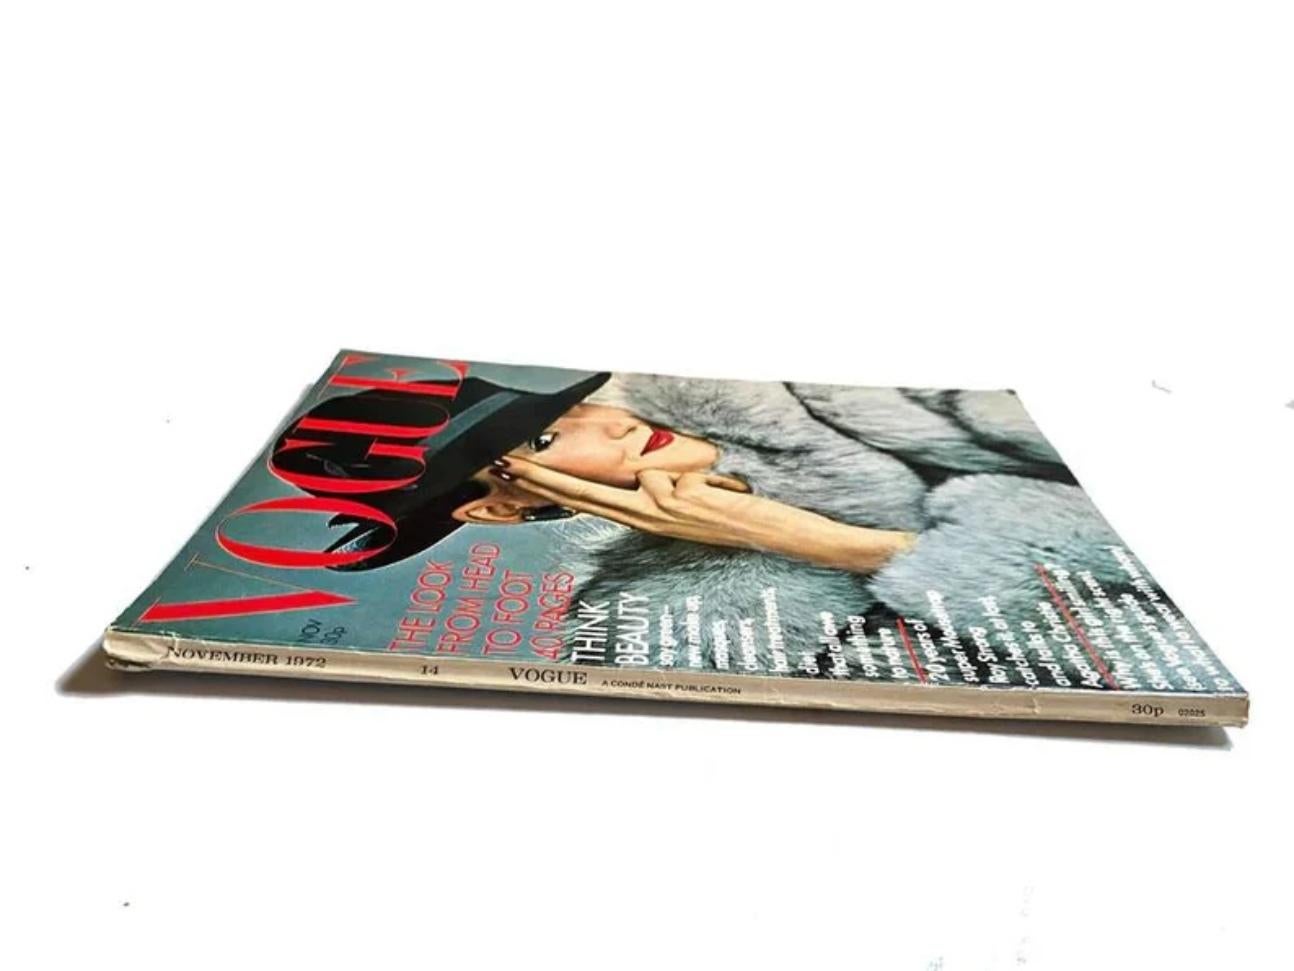 Vogue Magazine - novembre 1972, numéro 14. Nombre entier 2025. Volume 128. 180 pages, en couleur et en noir et blanc.
Couverture : Mode hivernale, la fourrure bleue de Missoni, photographie de Norman Parkinson
Caractéristiques : New York, Paris